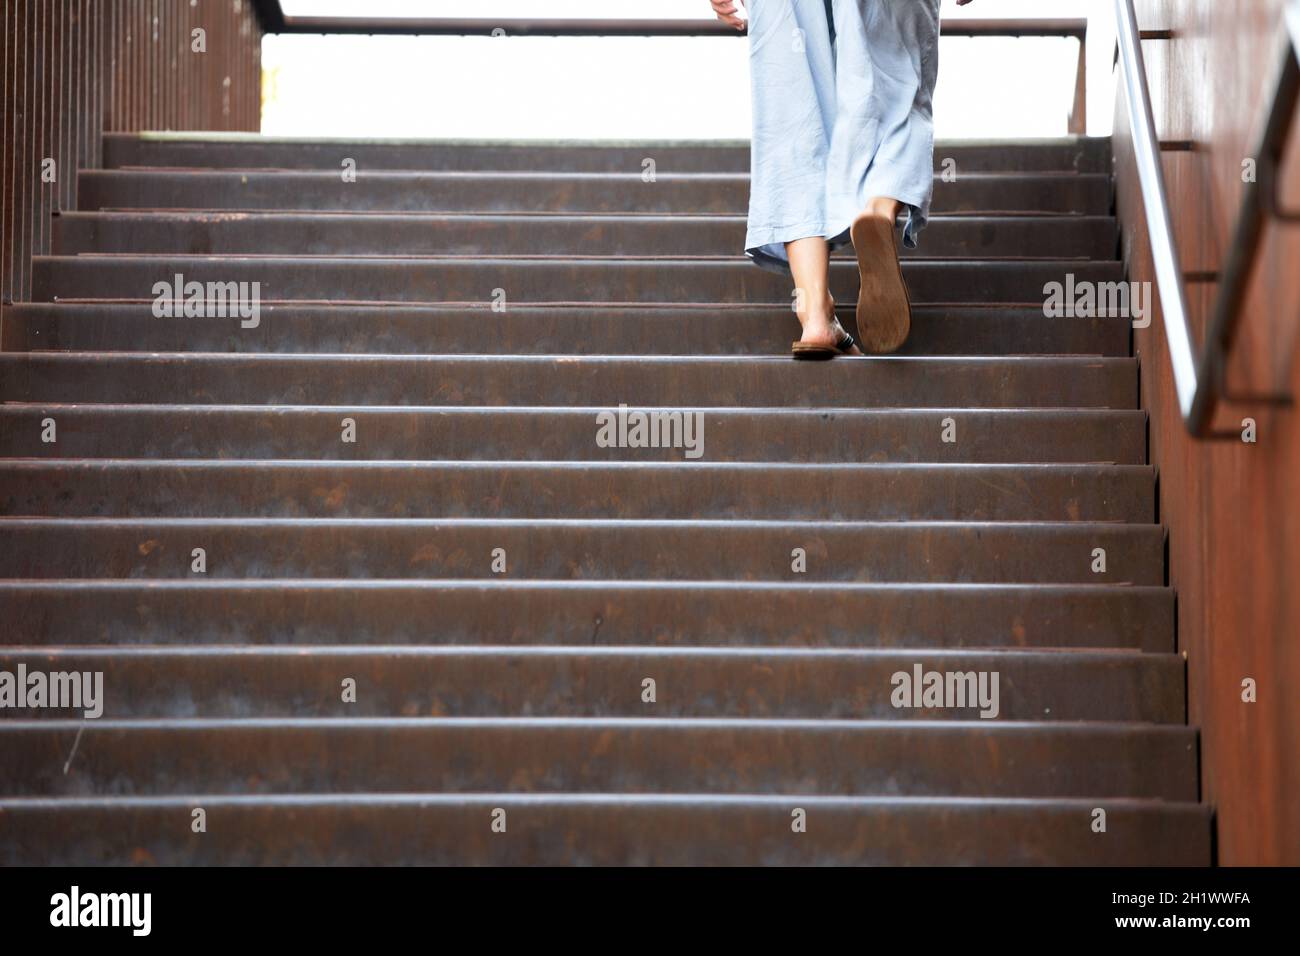 Eine Frau in sommerlicher Kleidung geht auf einer Stiege hinauf, Österreich, europa - A woman in summer clothes goes up a staircase, Austria, Europe Stock Photo